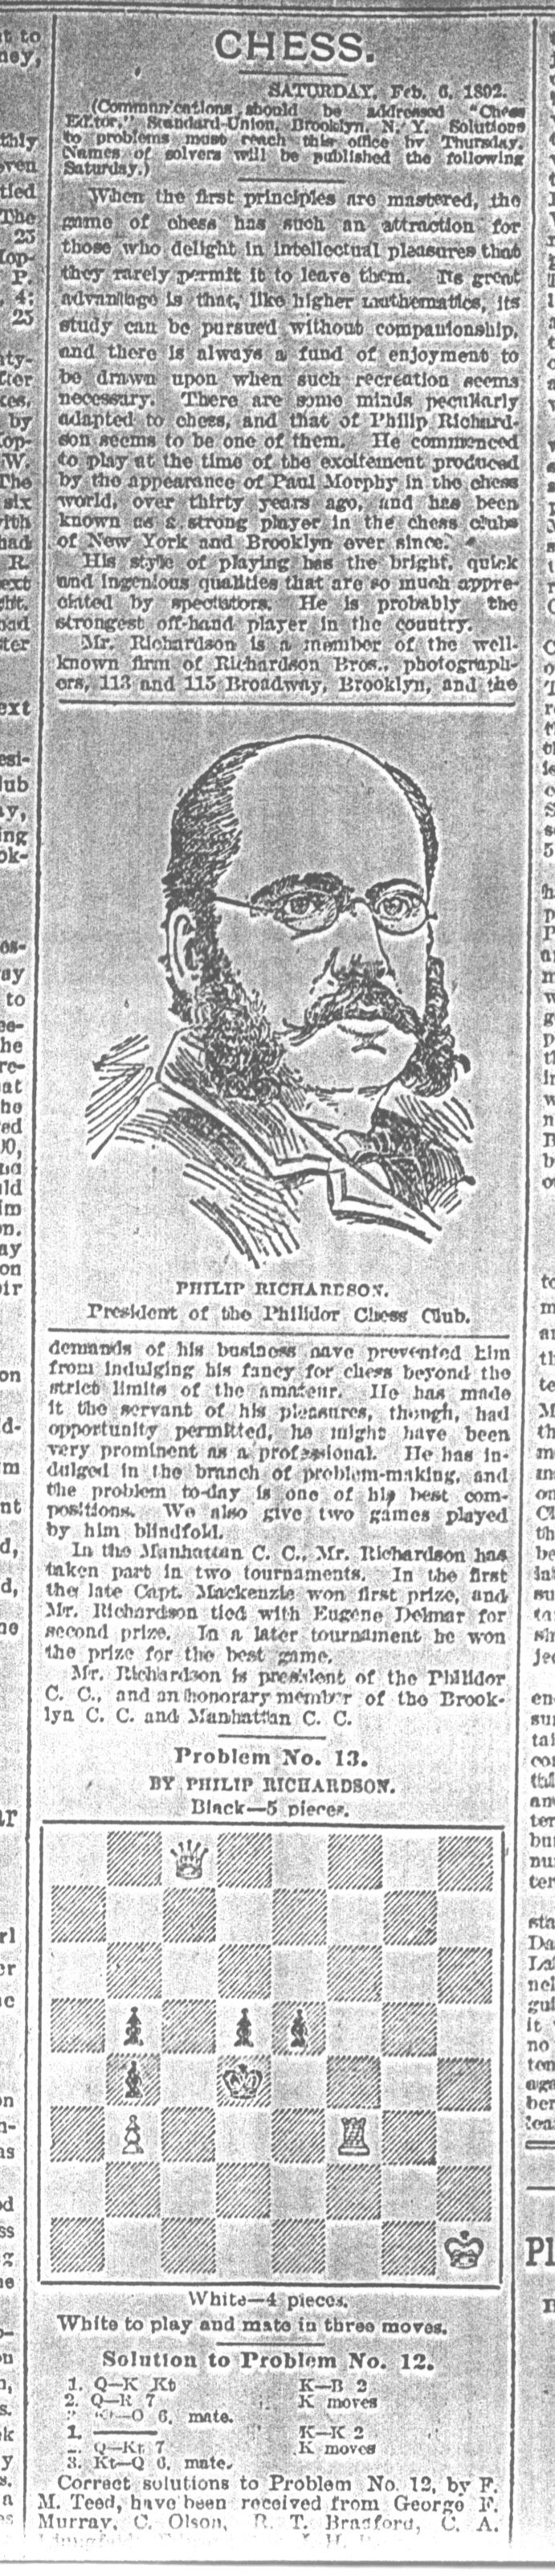 1892.02.06-01 Brooklyn Daily Standard-Union.jpg